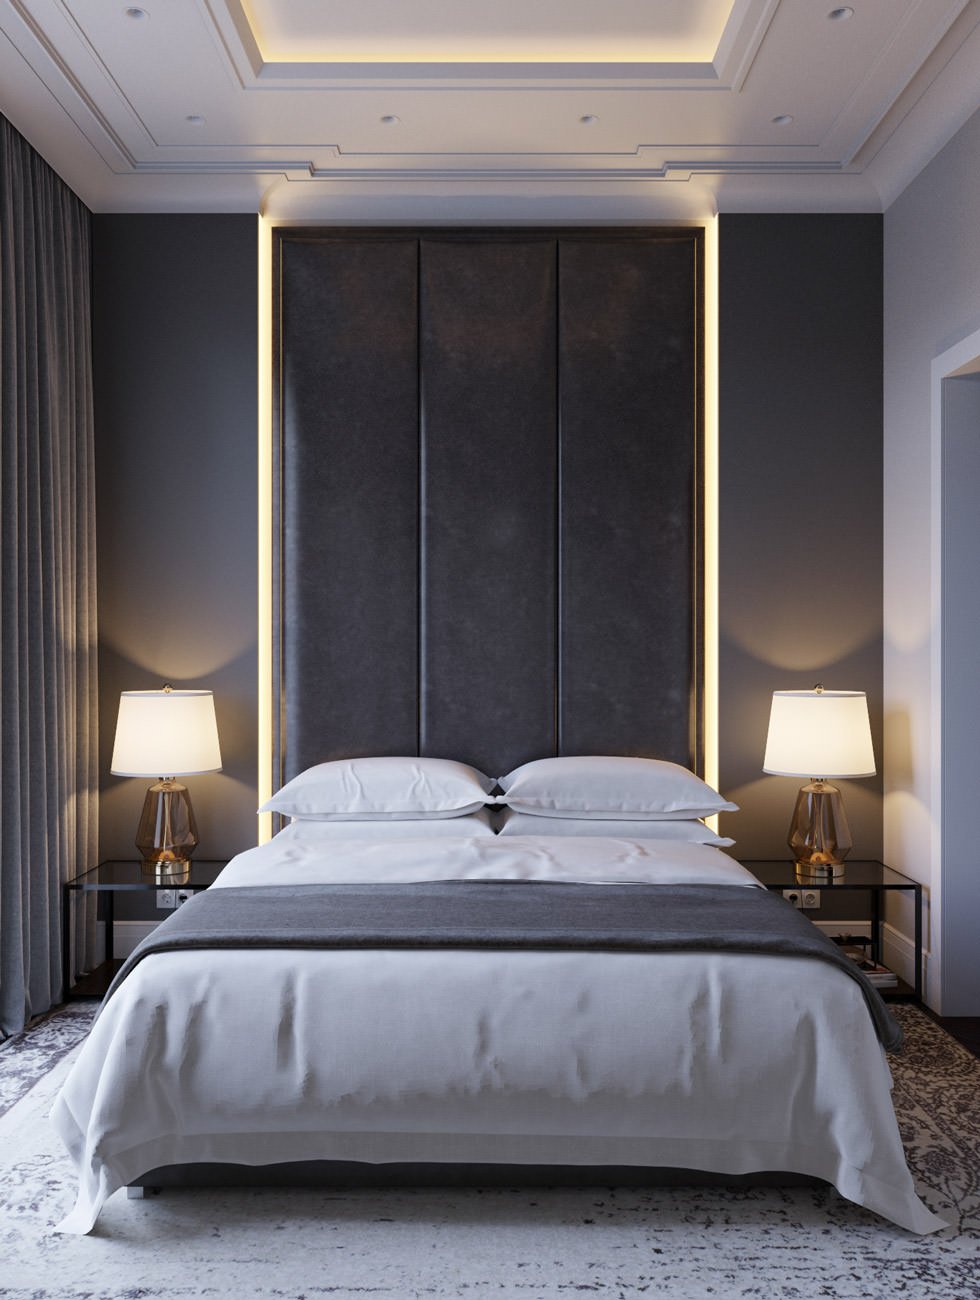 Camera da letto elegante e raffinata con particolare illuminazione a led - parete e soffitto in cartongesso